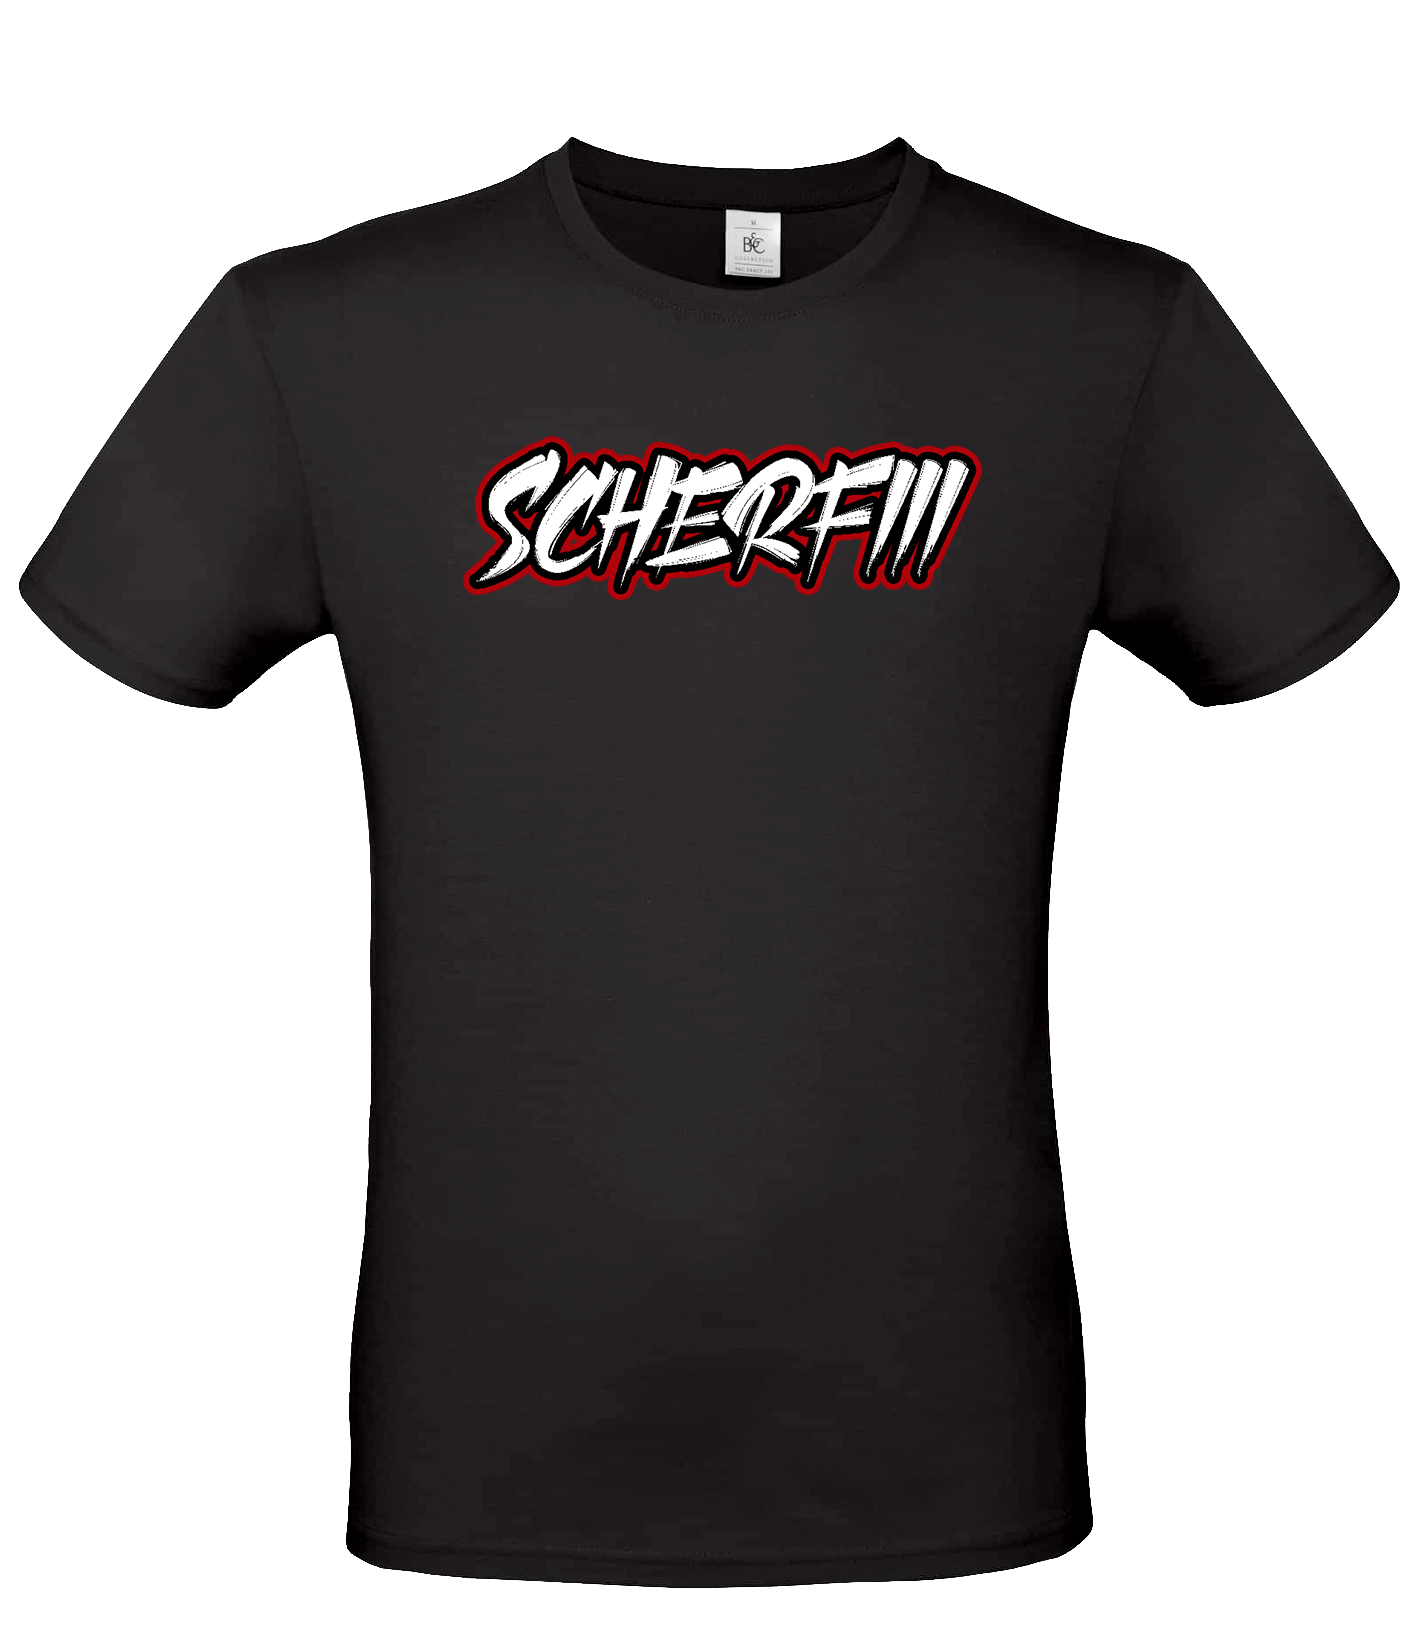 Scherfiii -  T-Shirt